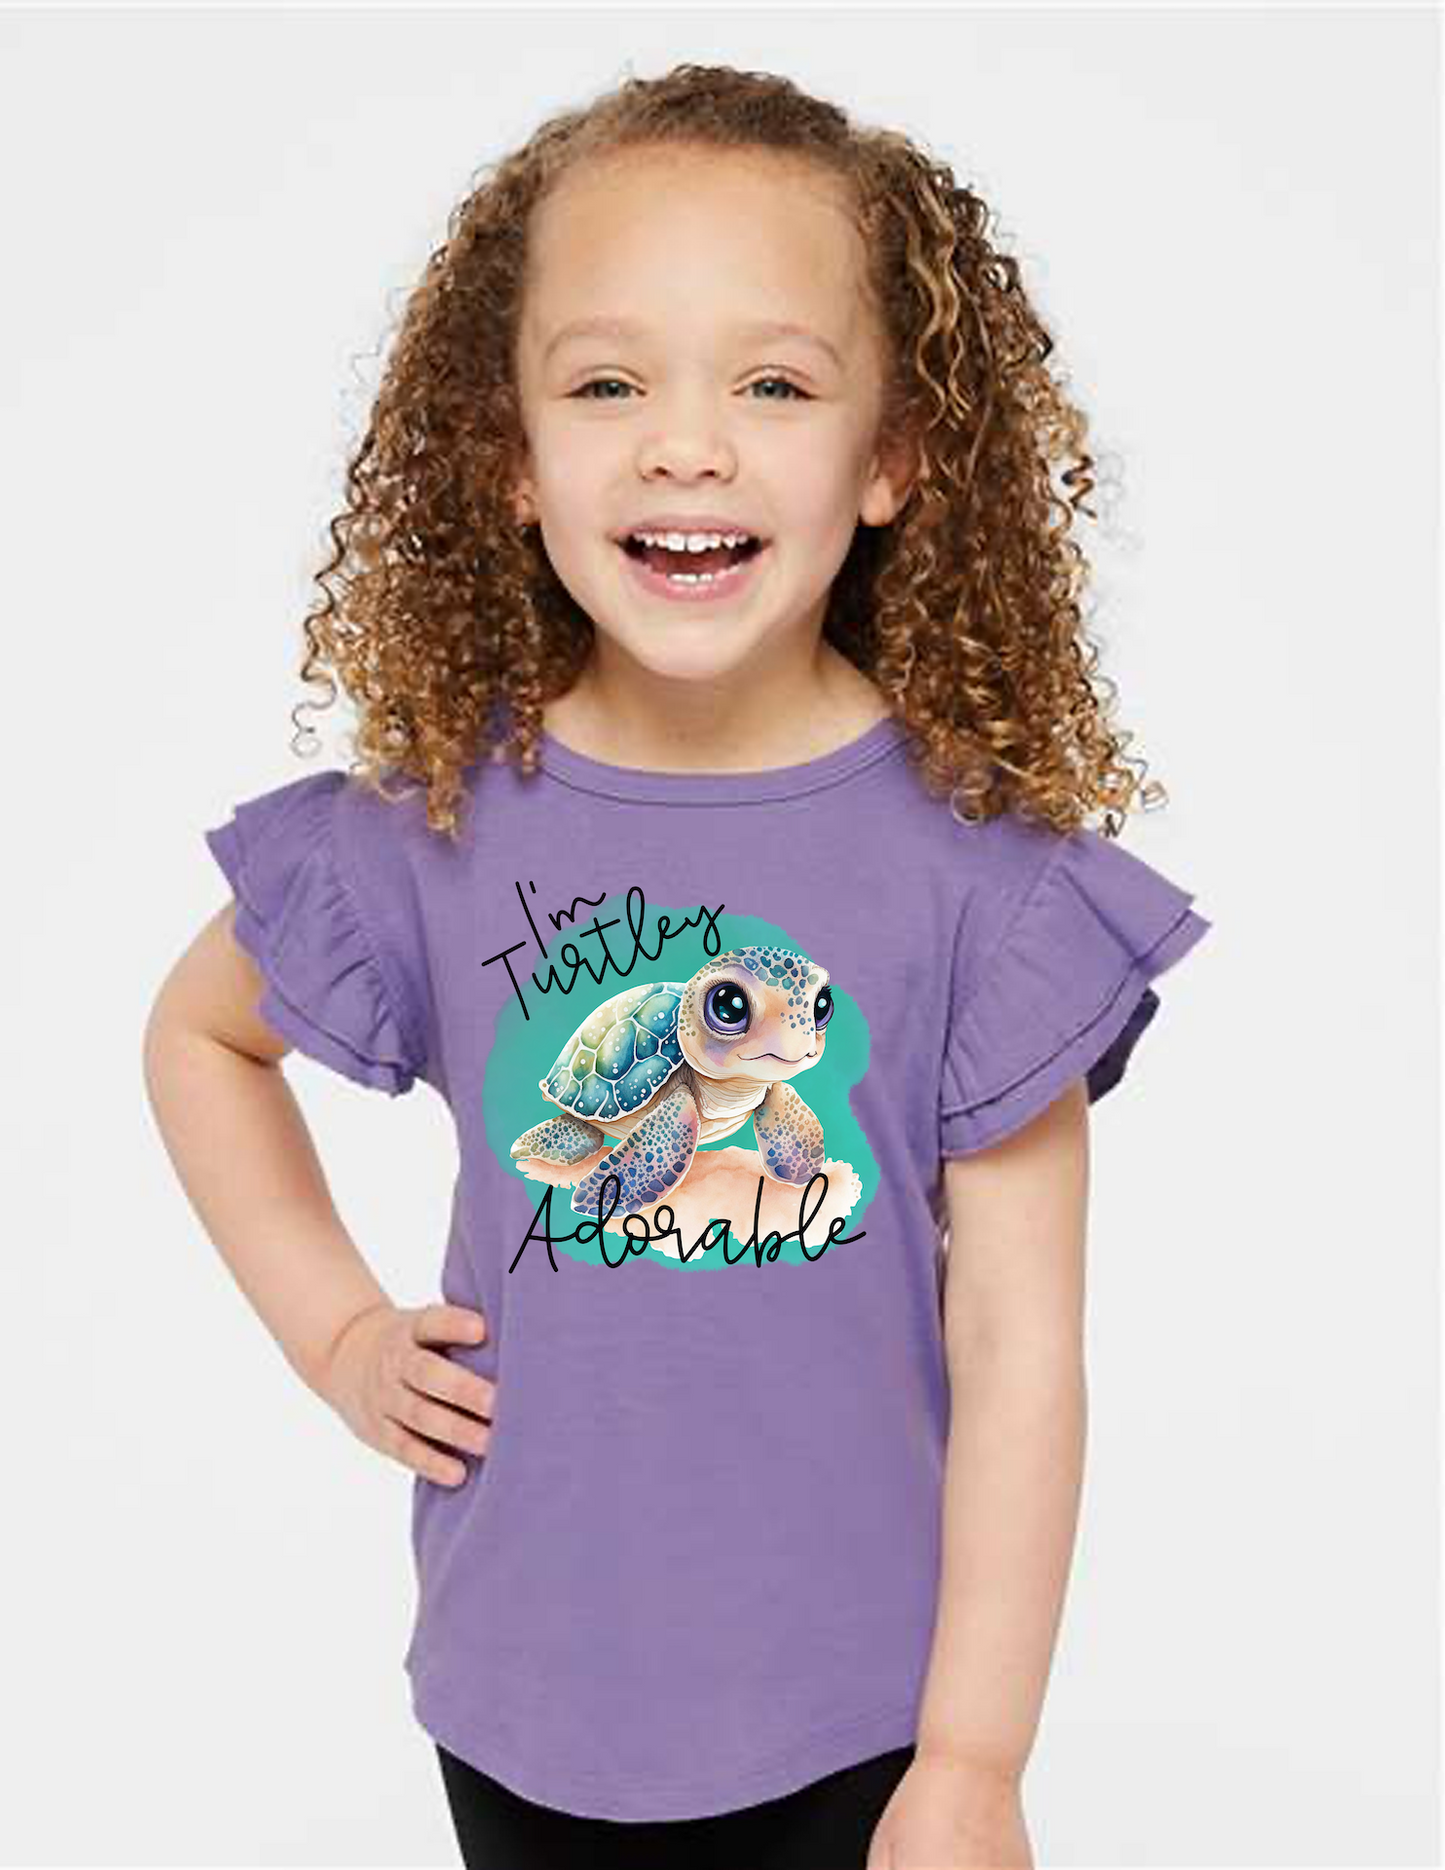 Turtley Adorable Flutter Sleeve Toddler T-Shirt